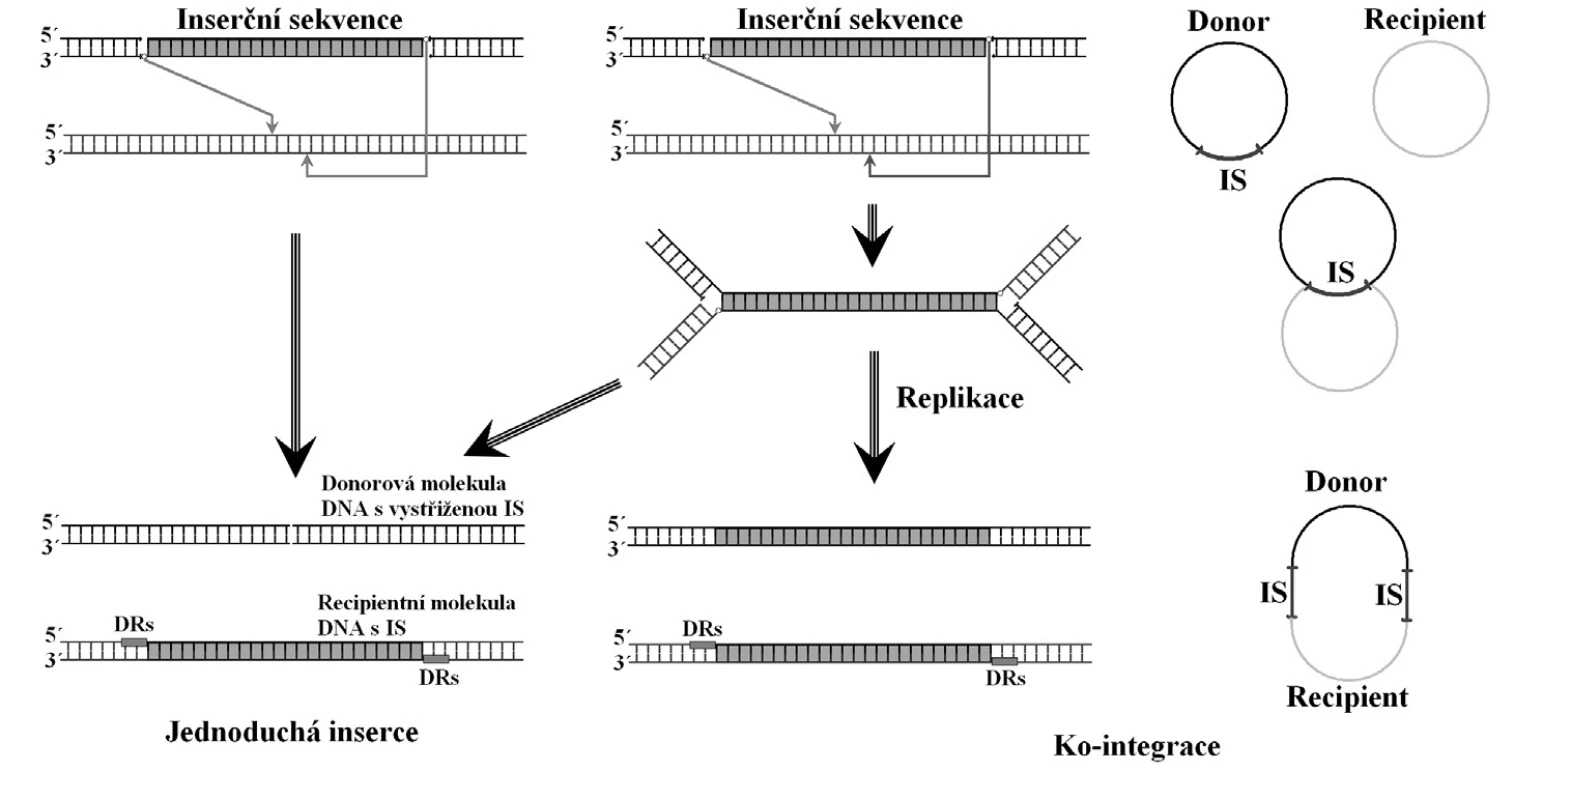 Mechanismy přenosu inserční sekvence mezi jednotlivými molekulami DNA. DRs – generované repetice. Volně podle [32]
&lt;b&gt;Fig. 2. &lt;/b&gt;Mechanisms of insertion sequence transfer between DNA molecules. DRs – generated repeats. Based on [32]